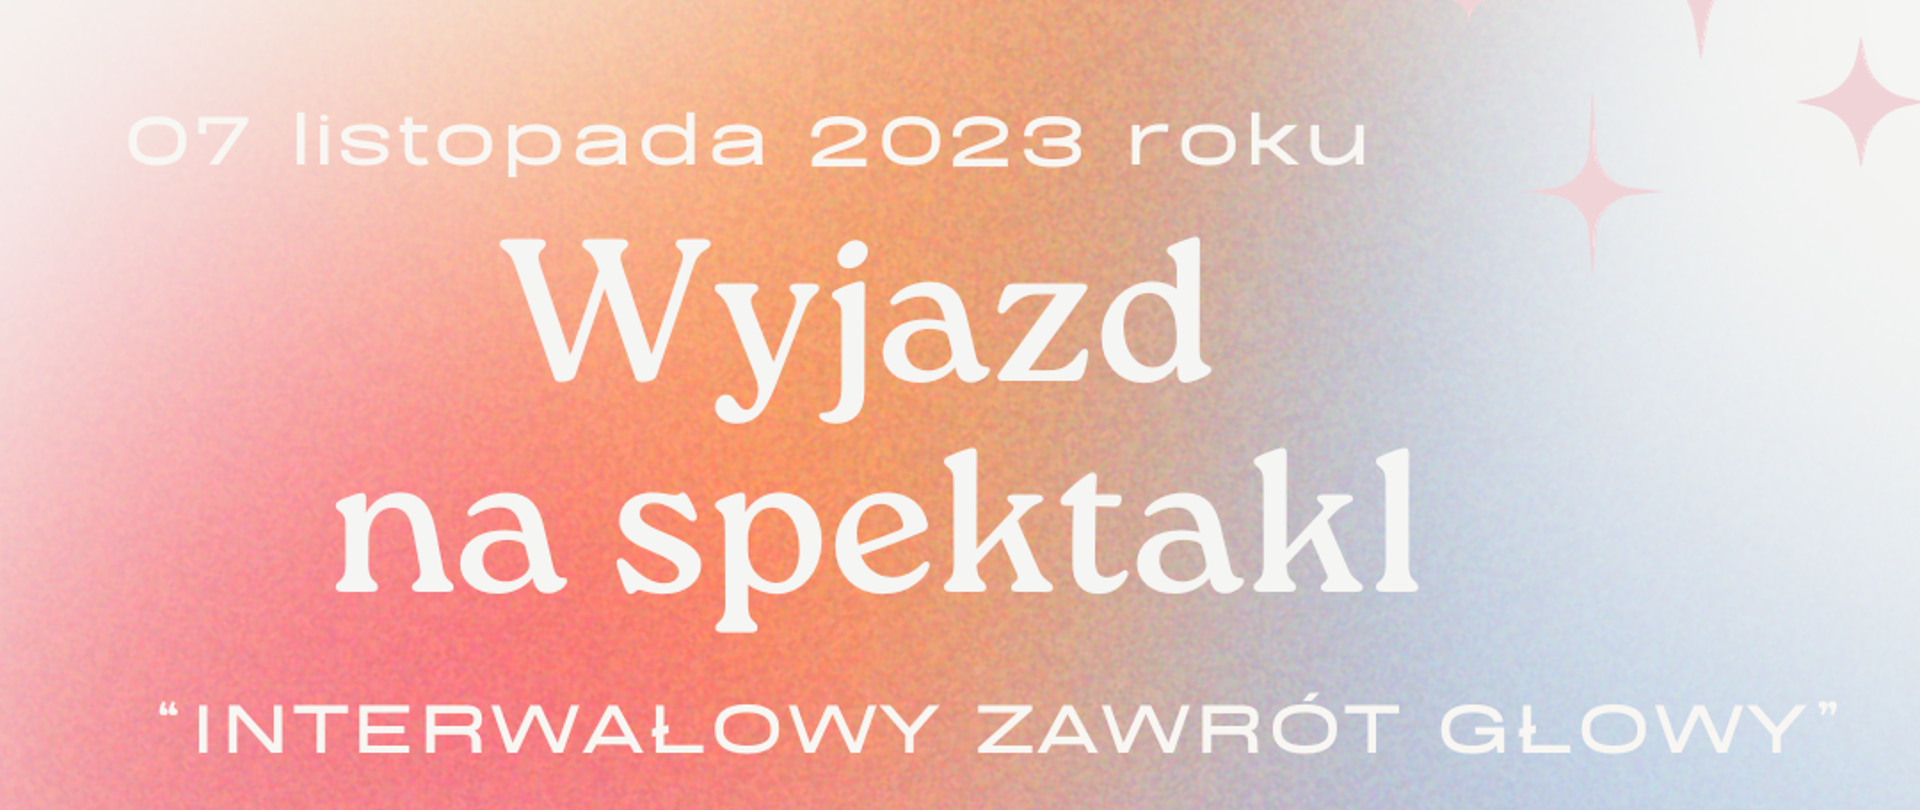 Plakat na różowo fioletowym tle; na nim informacja na temat wyjazdu na spektakl w dniu 07.11.2023 roku.